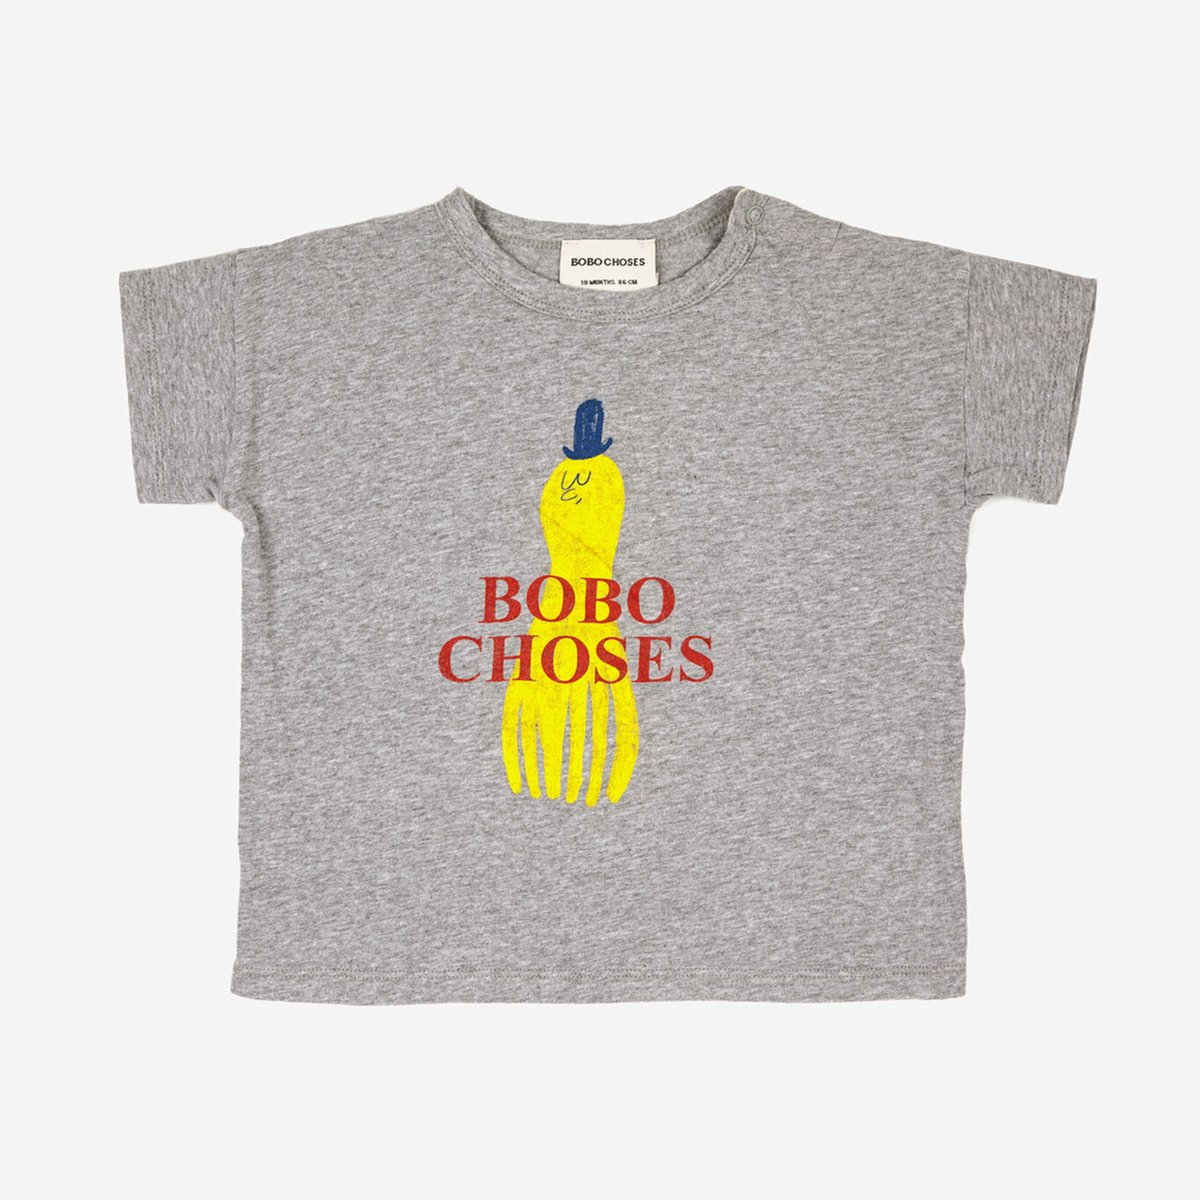 BOBO CHOSES Tシャツ BOBOCHOSES ボボショセス